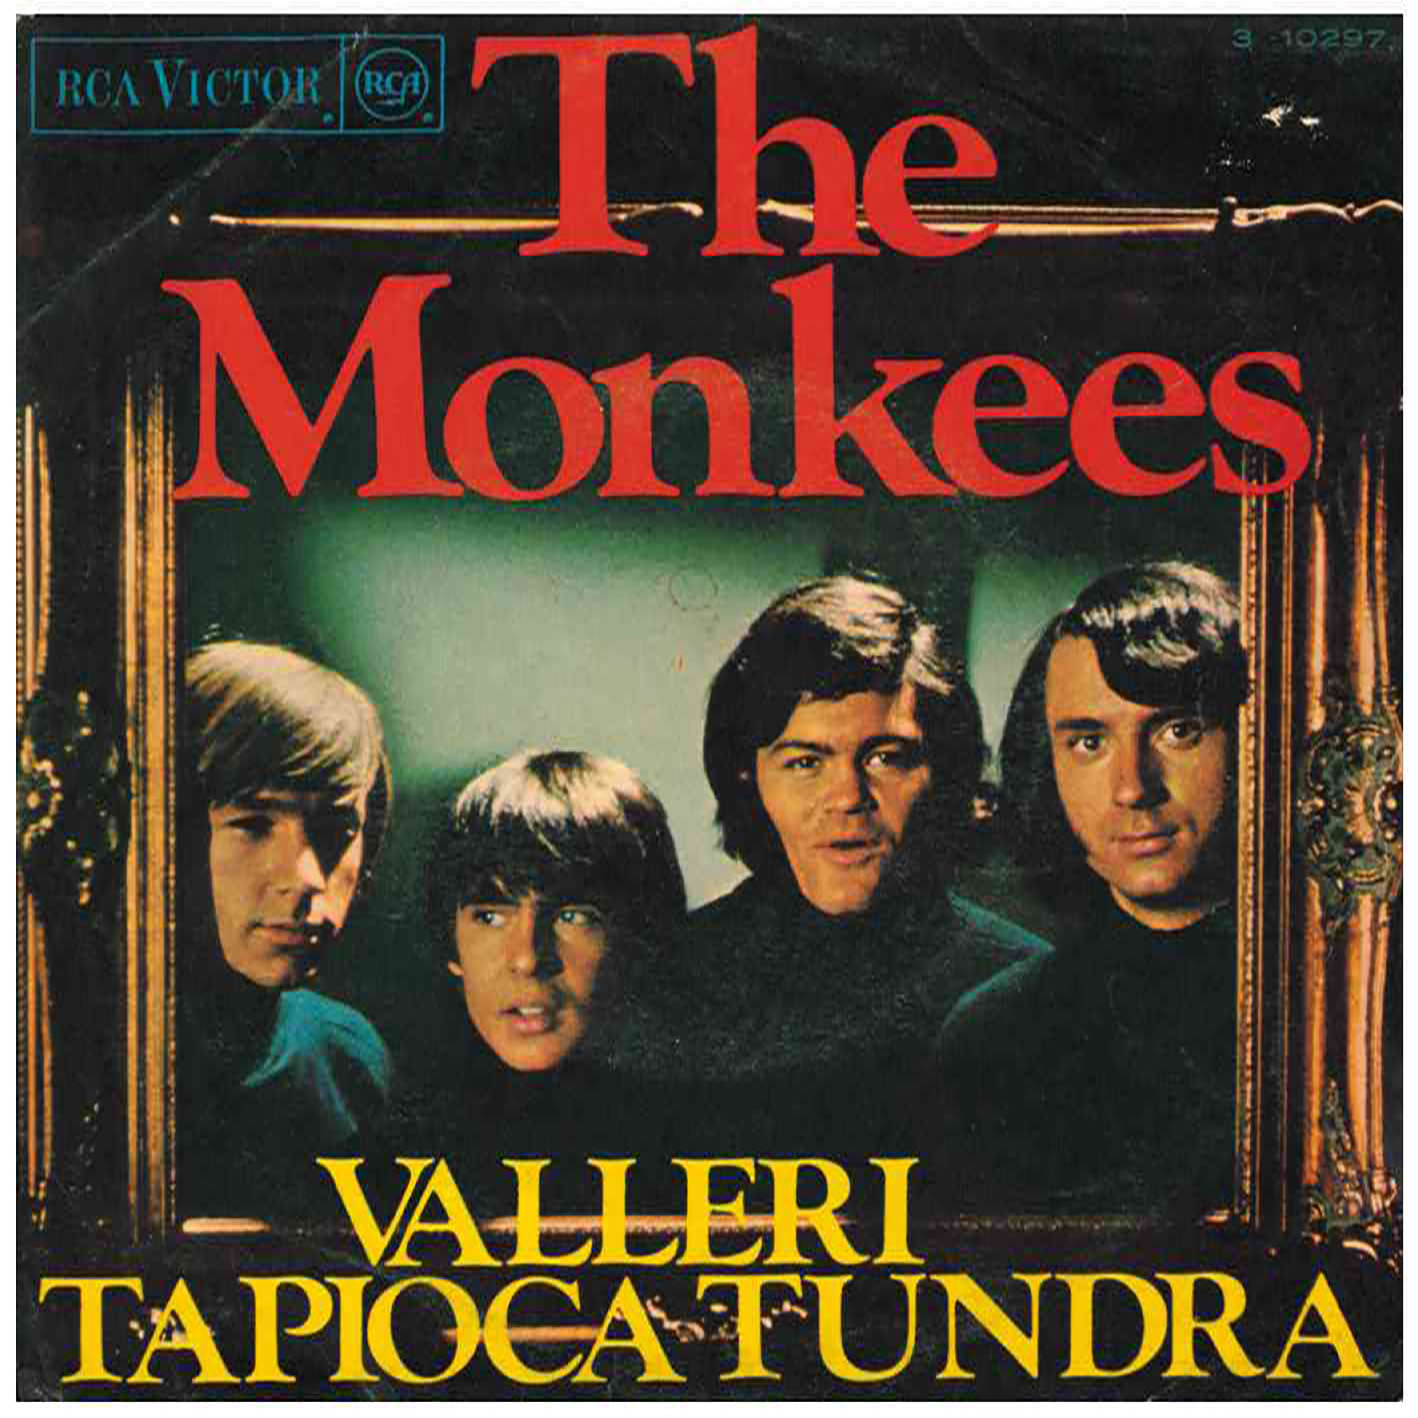 The Monkees – Valleri / Tapioca Tundra